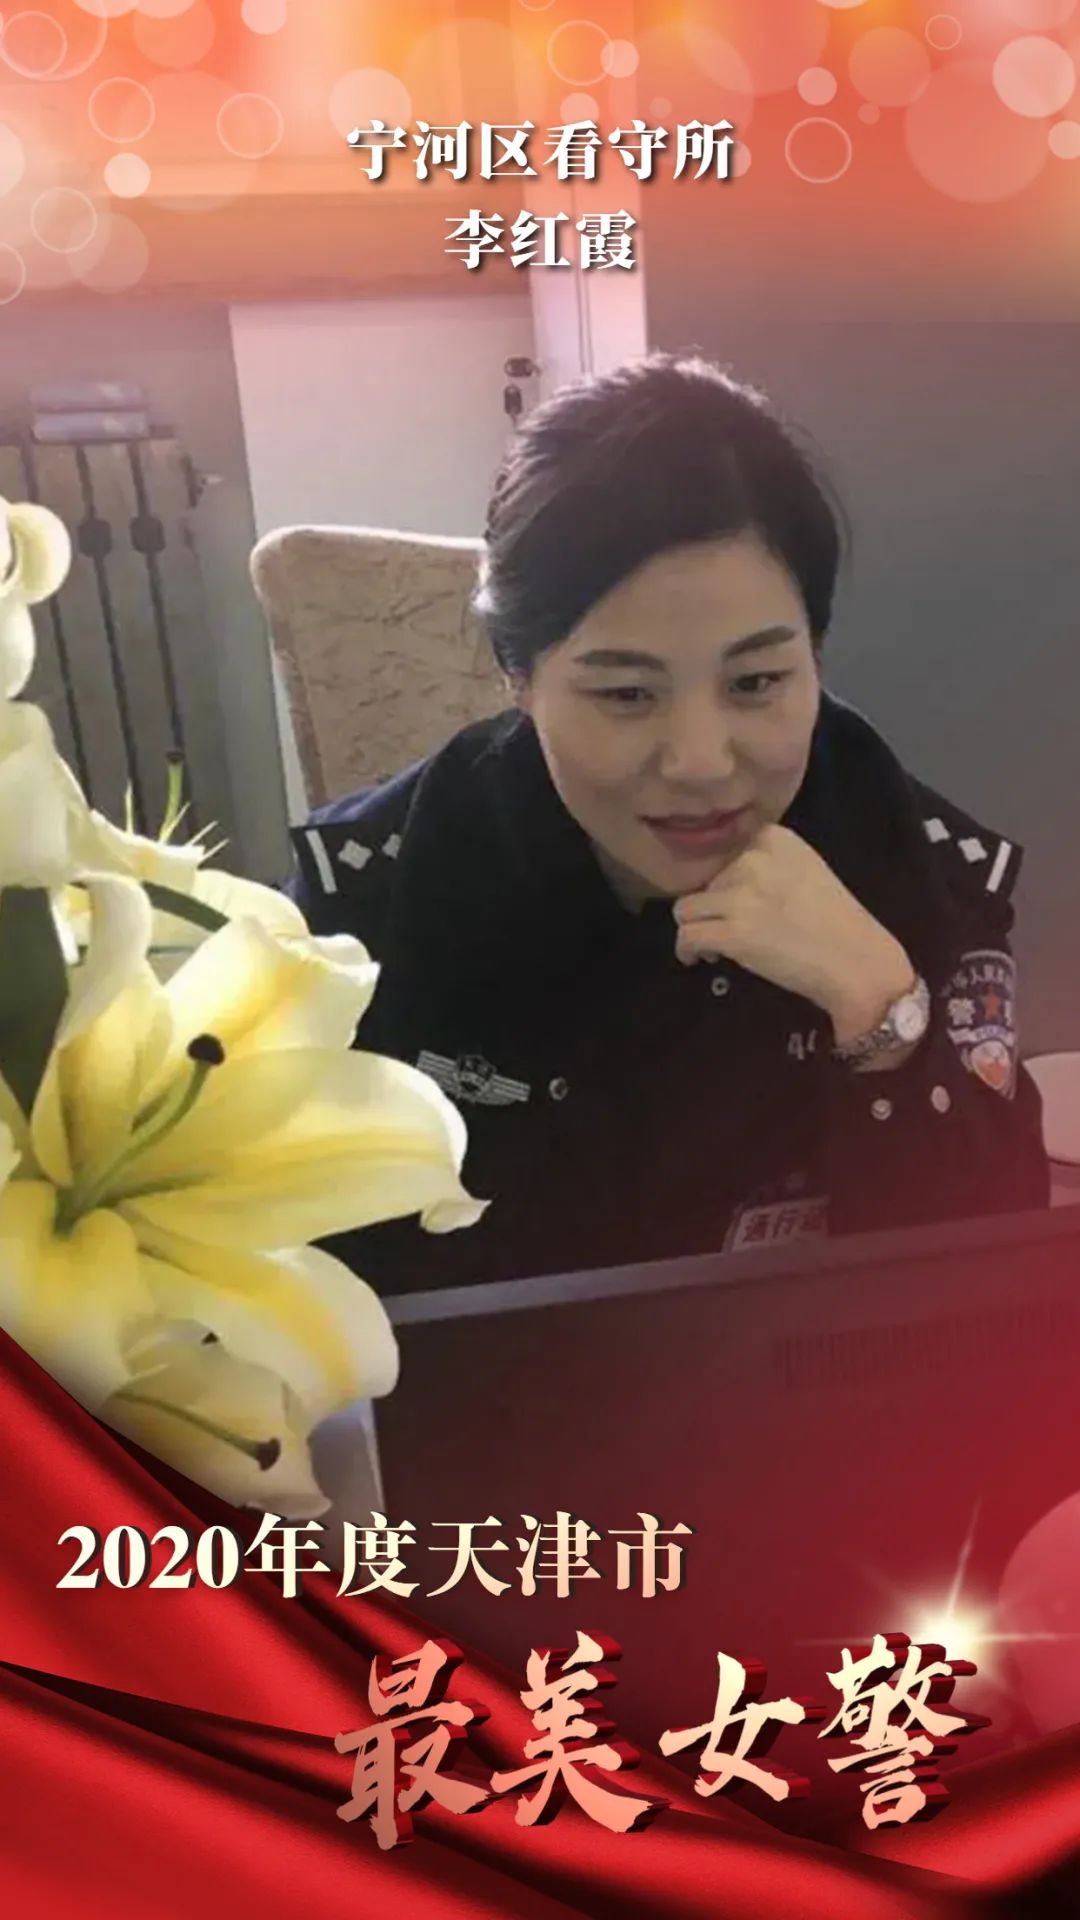 妇女节这天，武汉这场分享会上每一名女警都收到一束康乃馨_石涵_辖区_专业